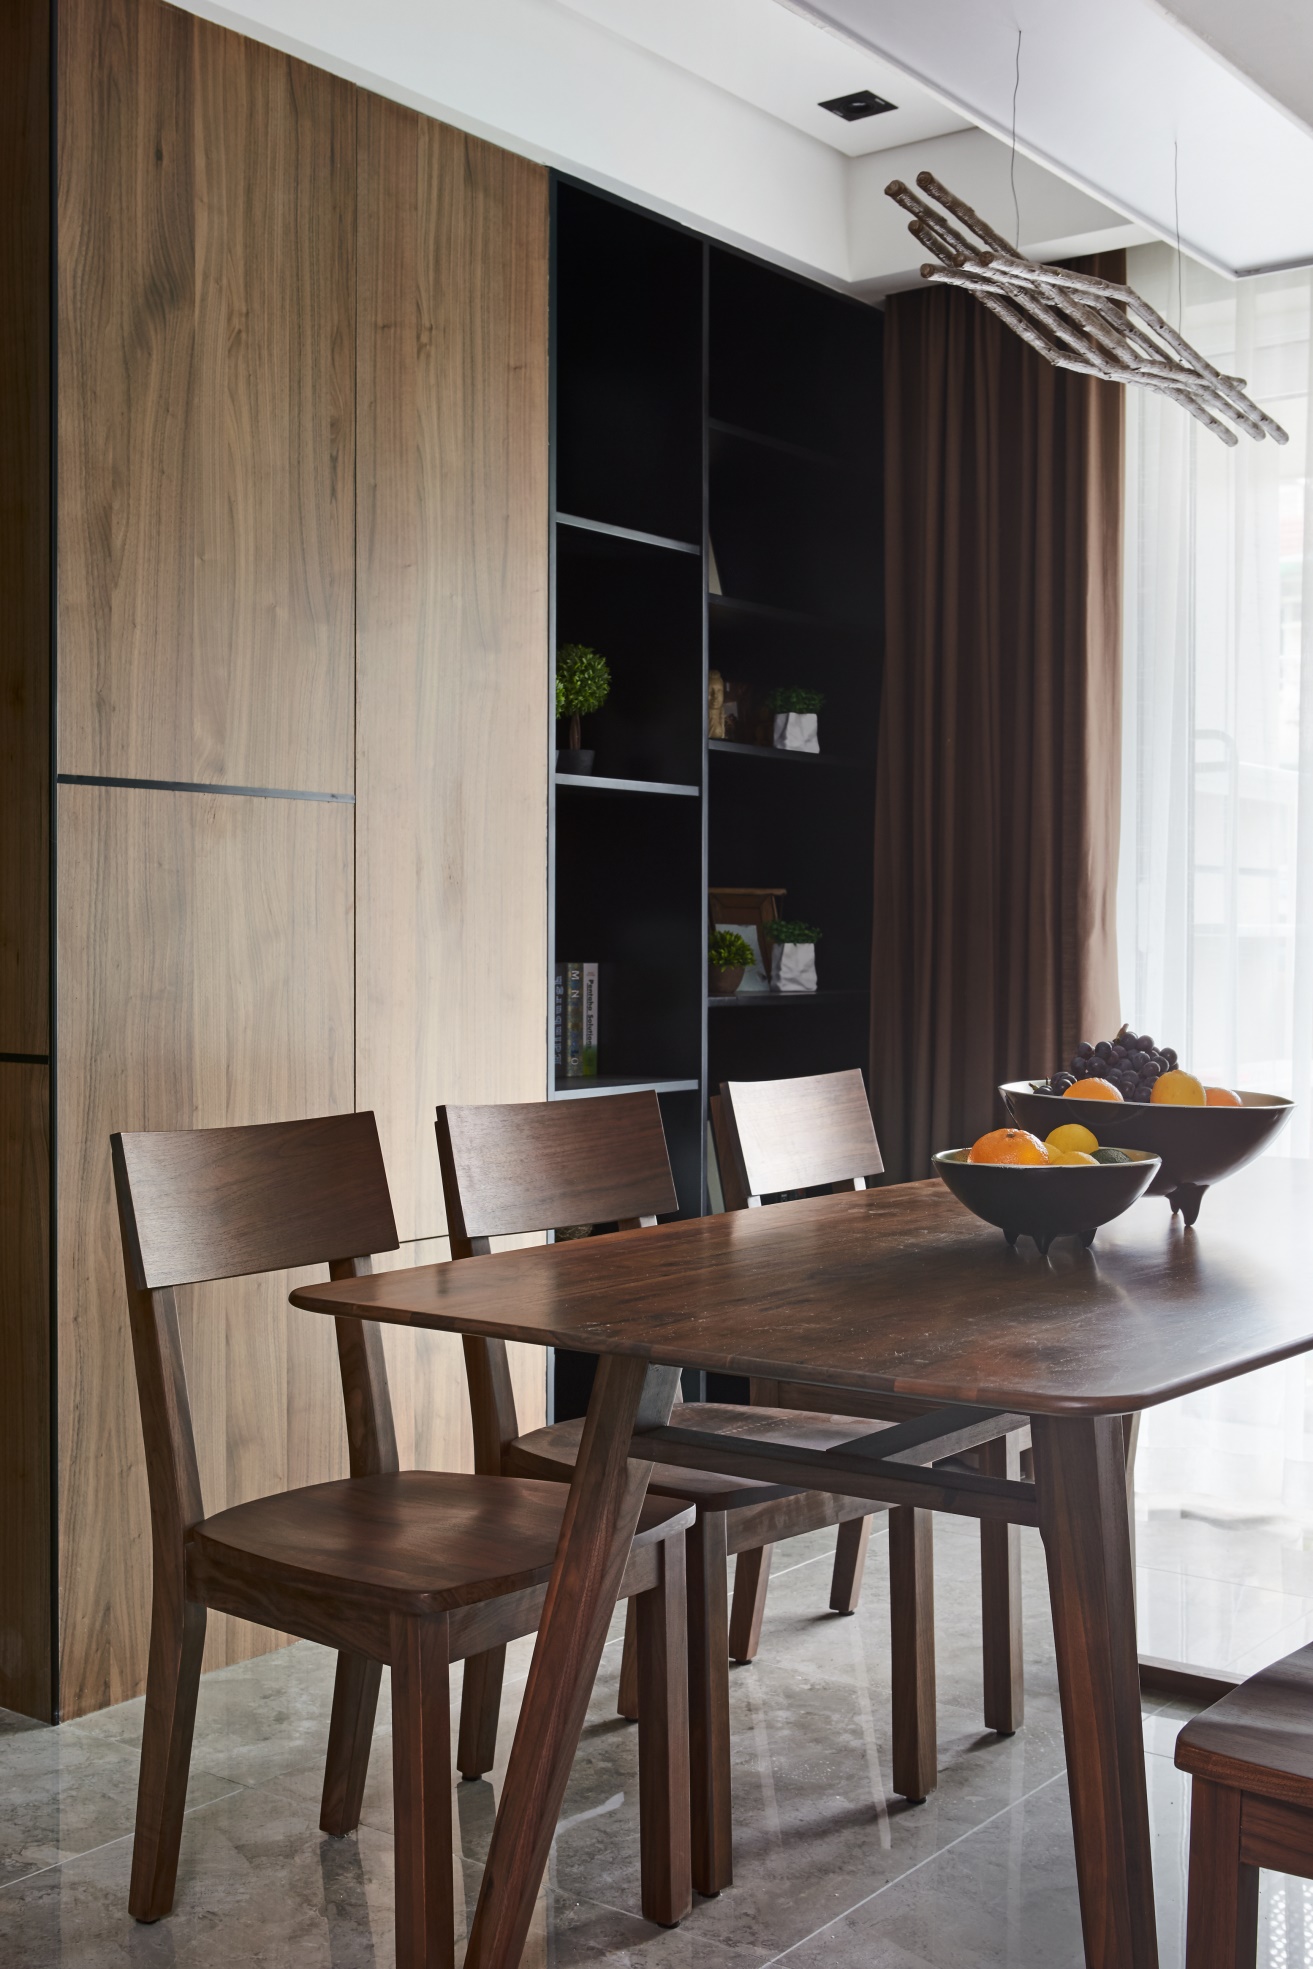 餐边柜最大程度利用了空间面积，巧用木质结构打造，增加了美观度与实用度。